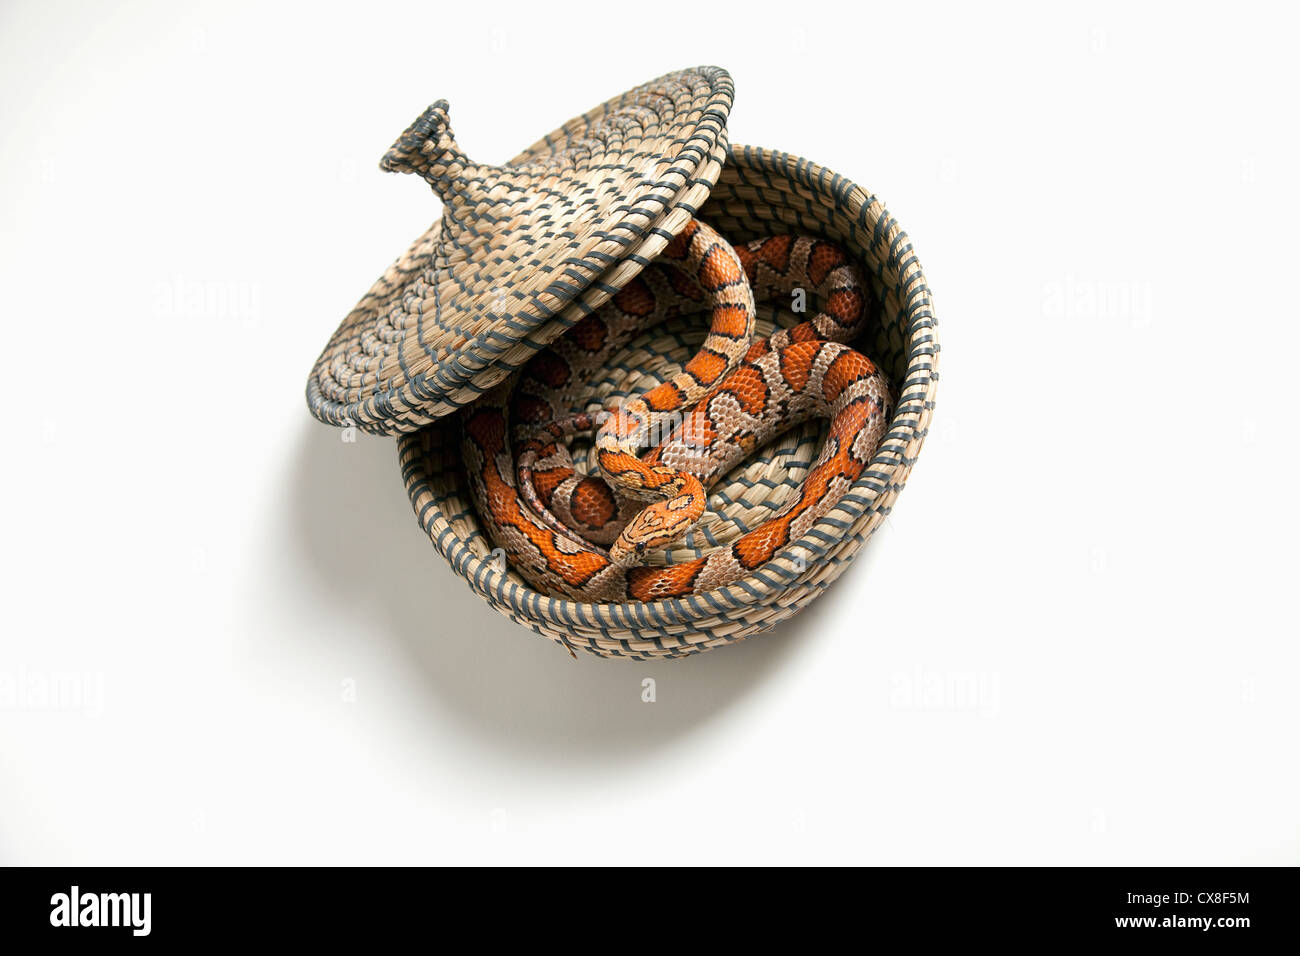 Le maïs (Pantherophis Guttatus Guttatus serpent enroulé) dans un panier ; Spruce Grove Alberta Canada Banque D'Images